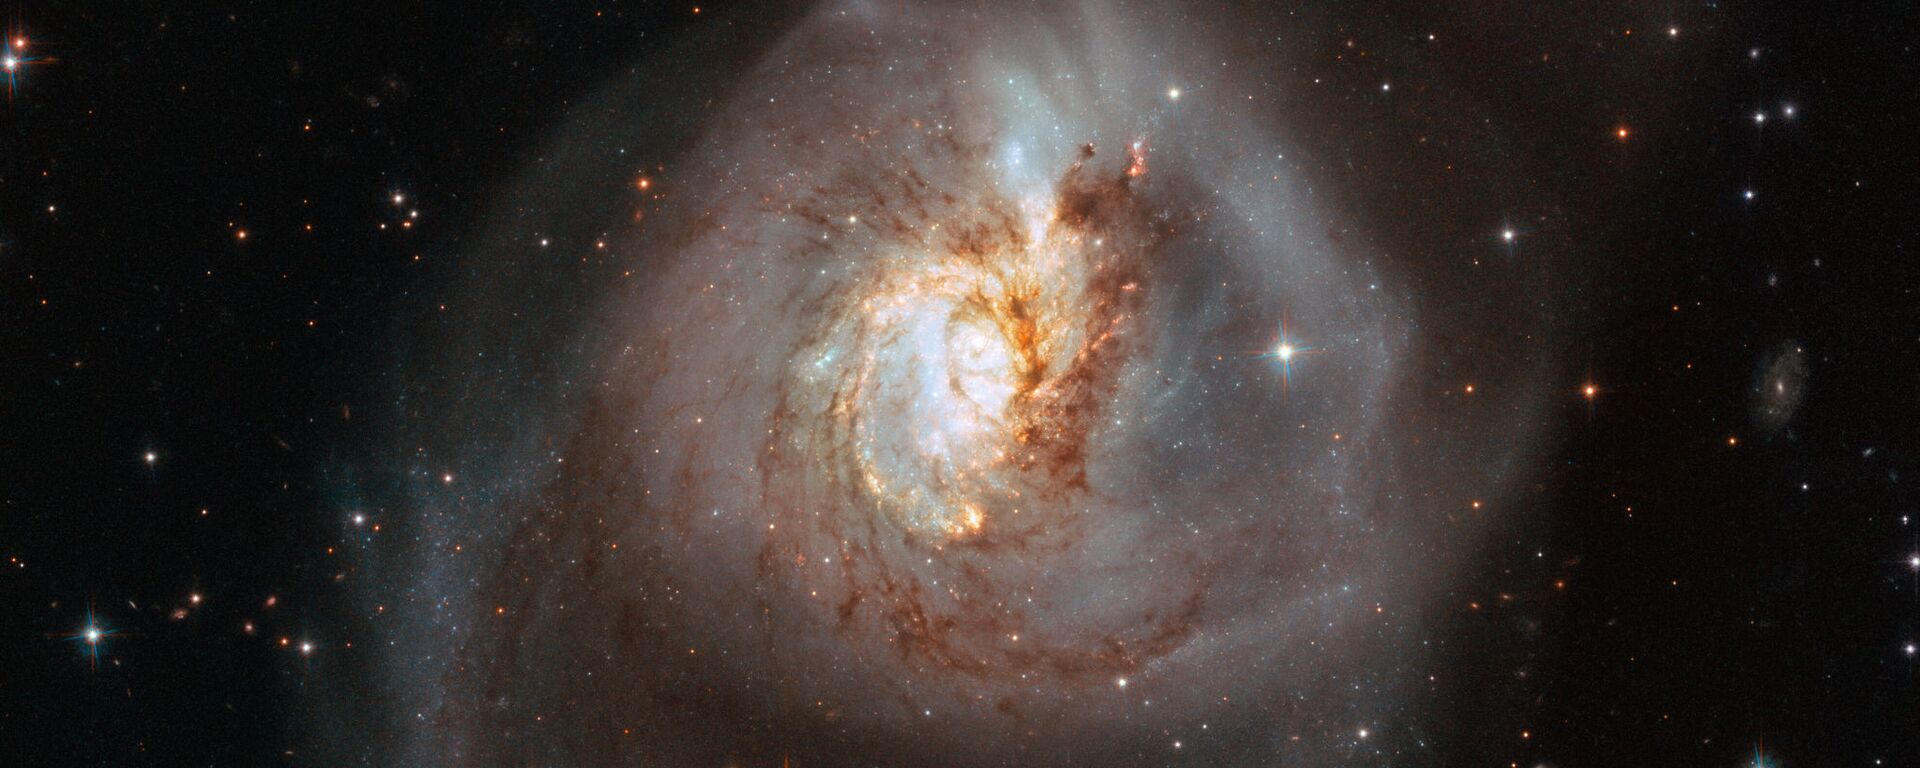 La galaxia NGC 3256 - Sputnik Mundo, 1920, 10.01.2021